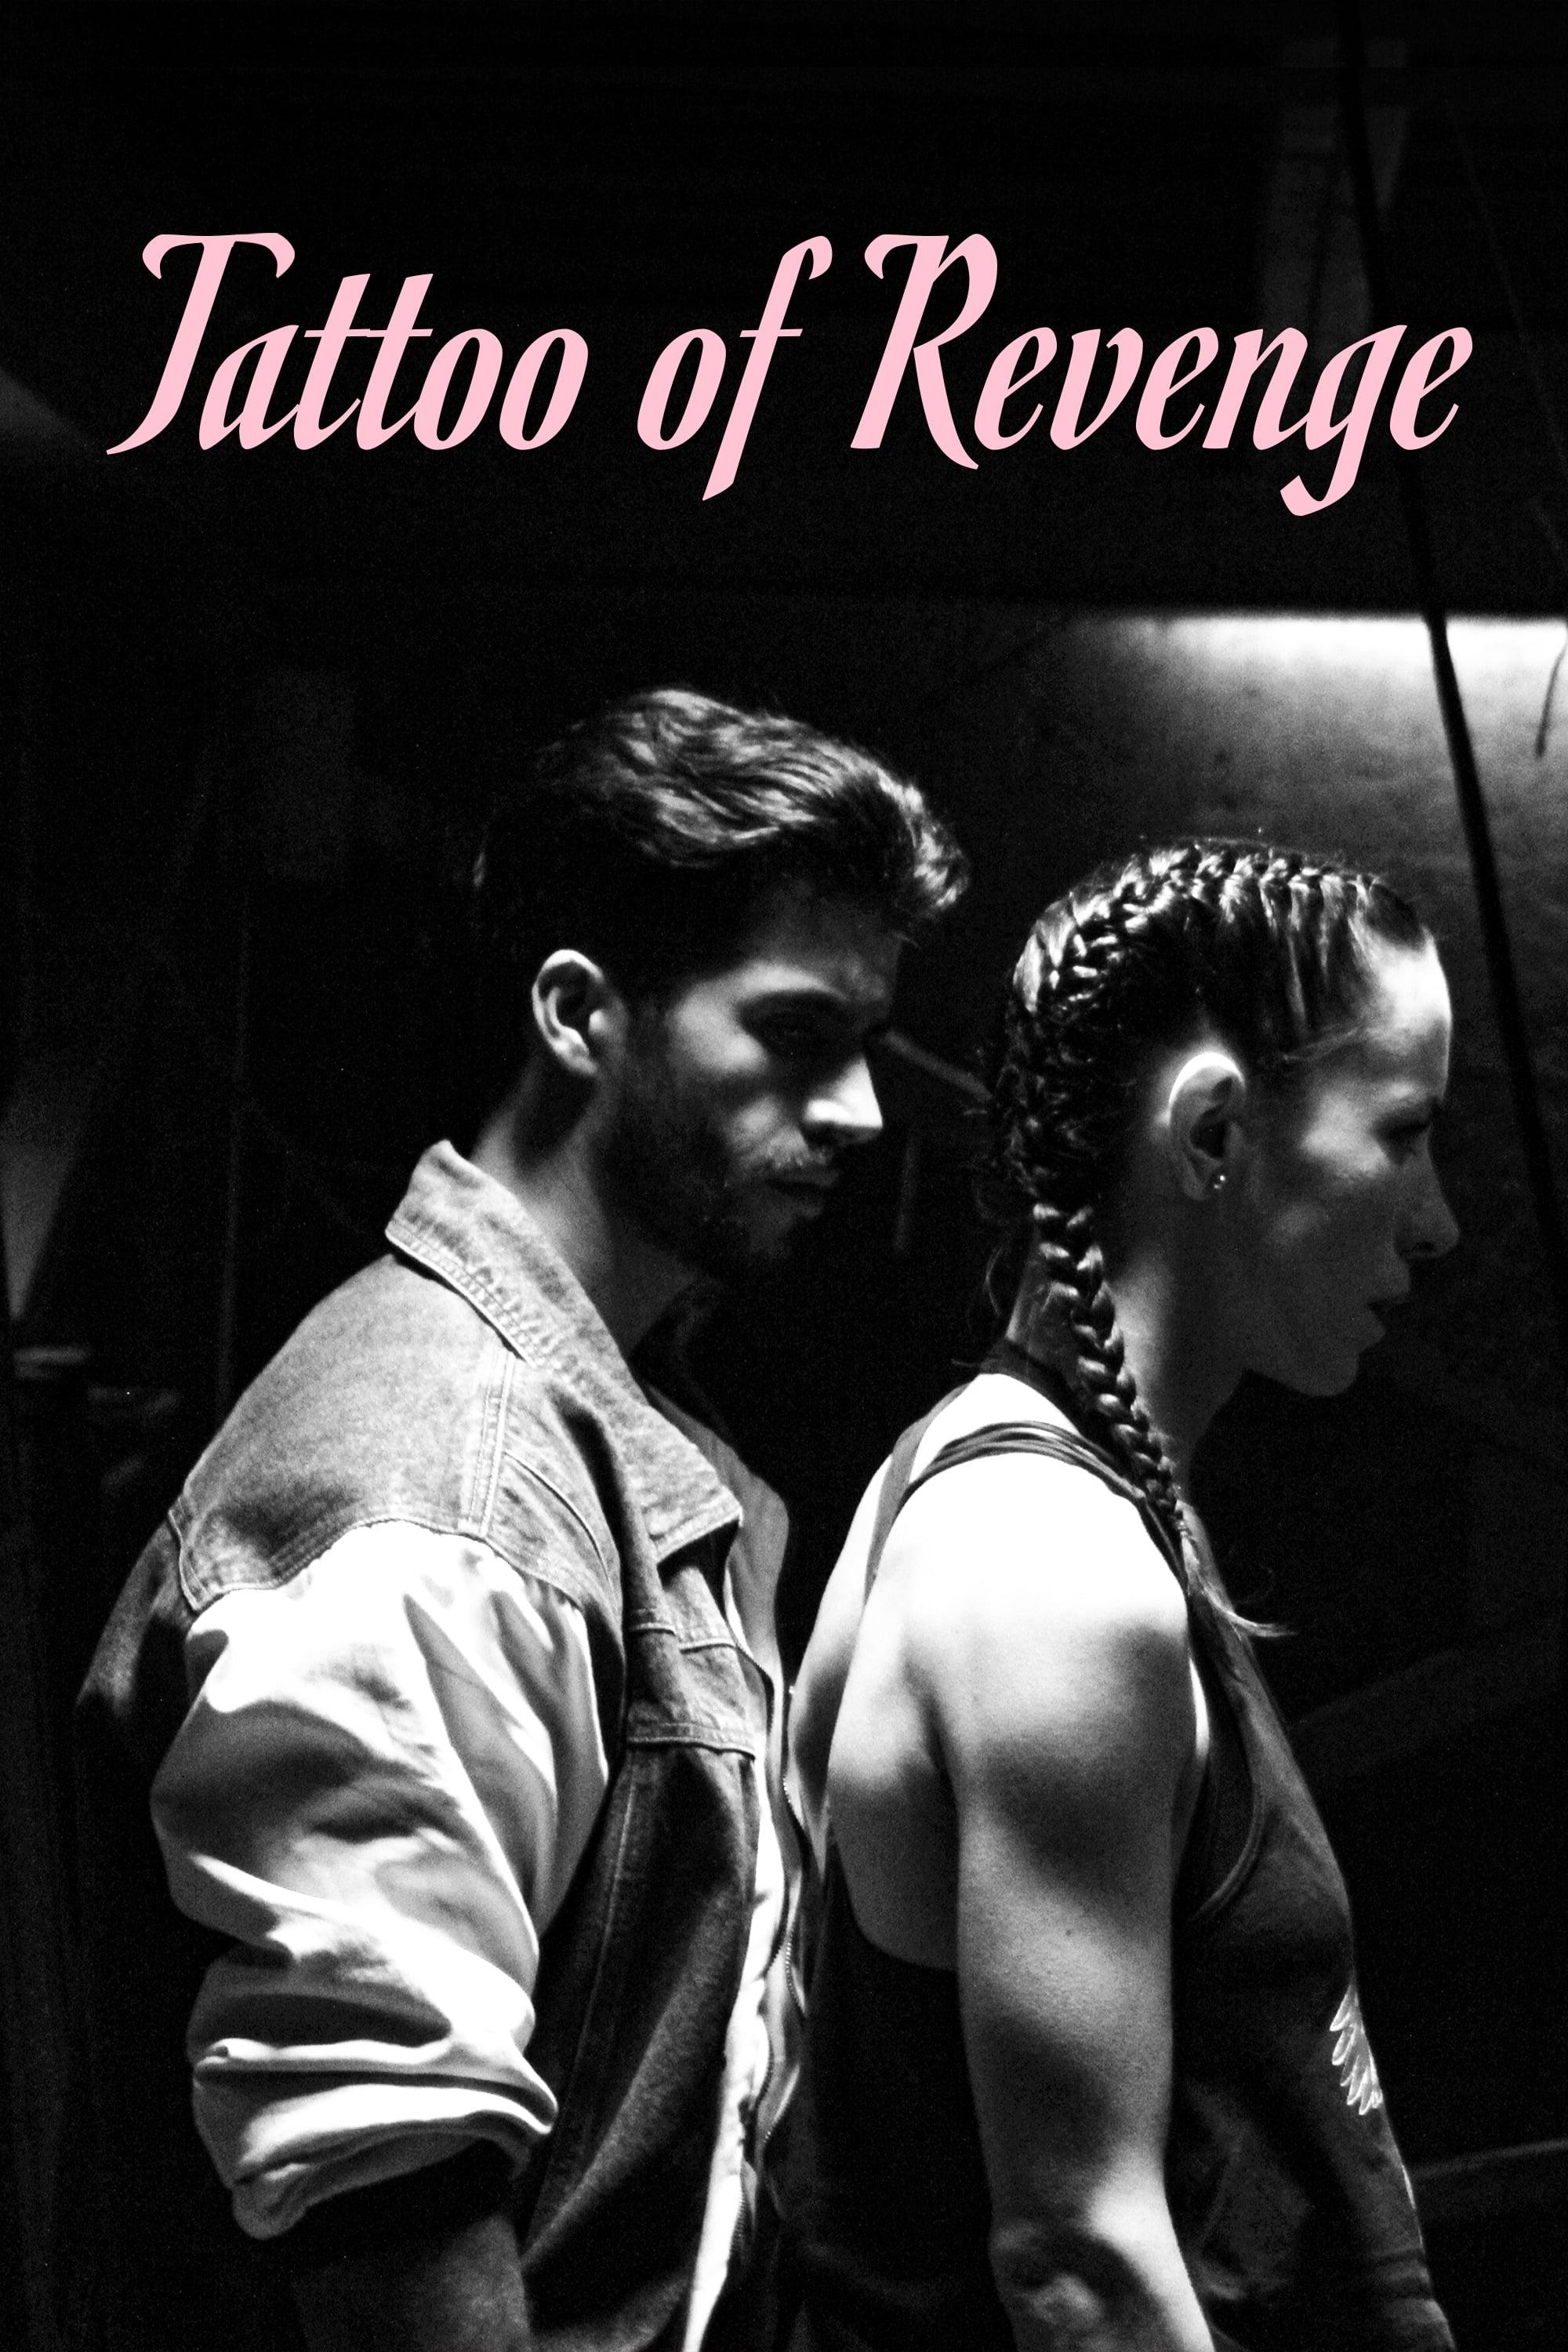 Tattoo of Revenge poster